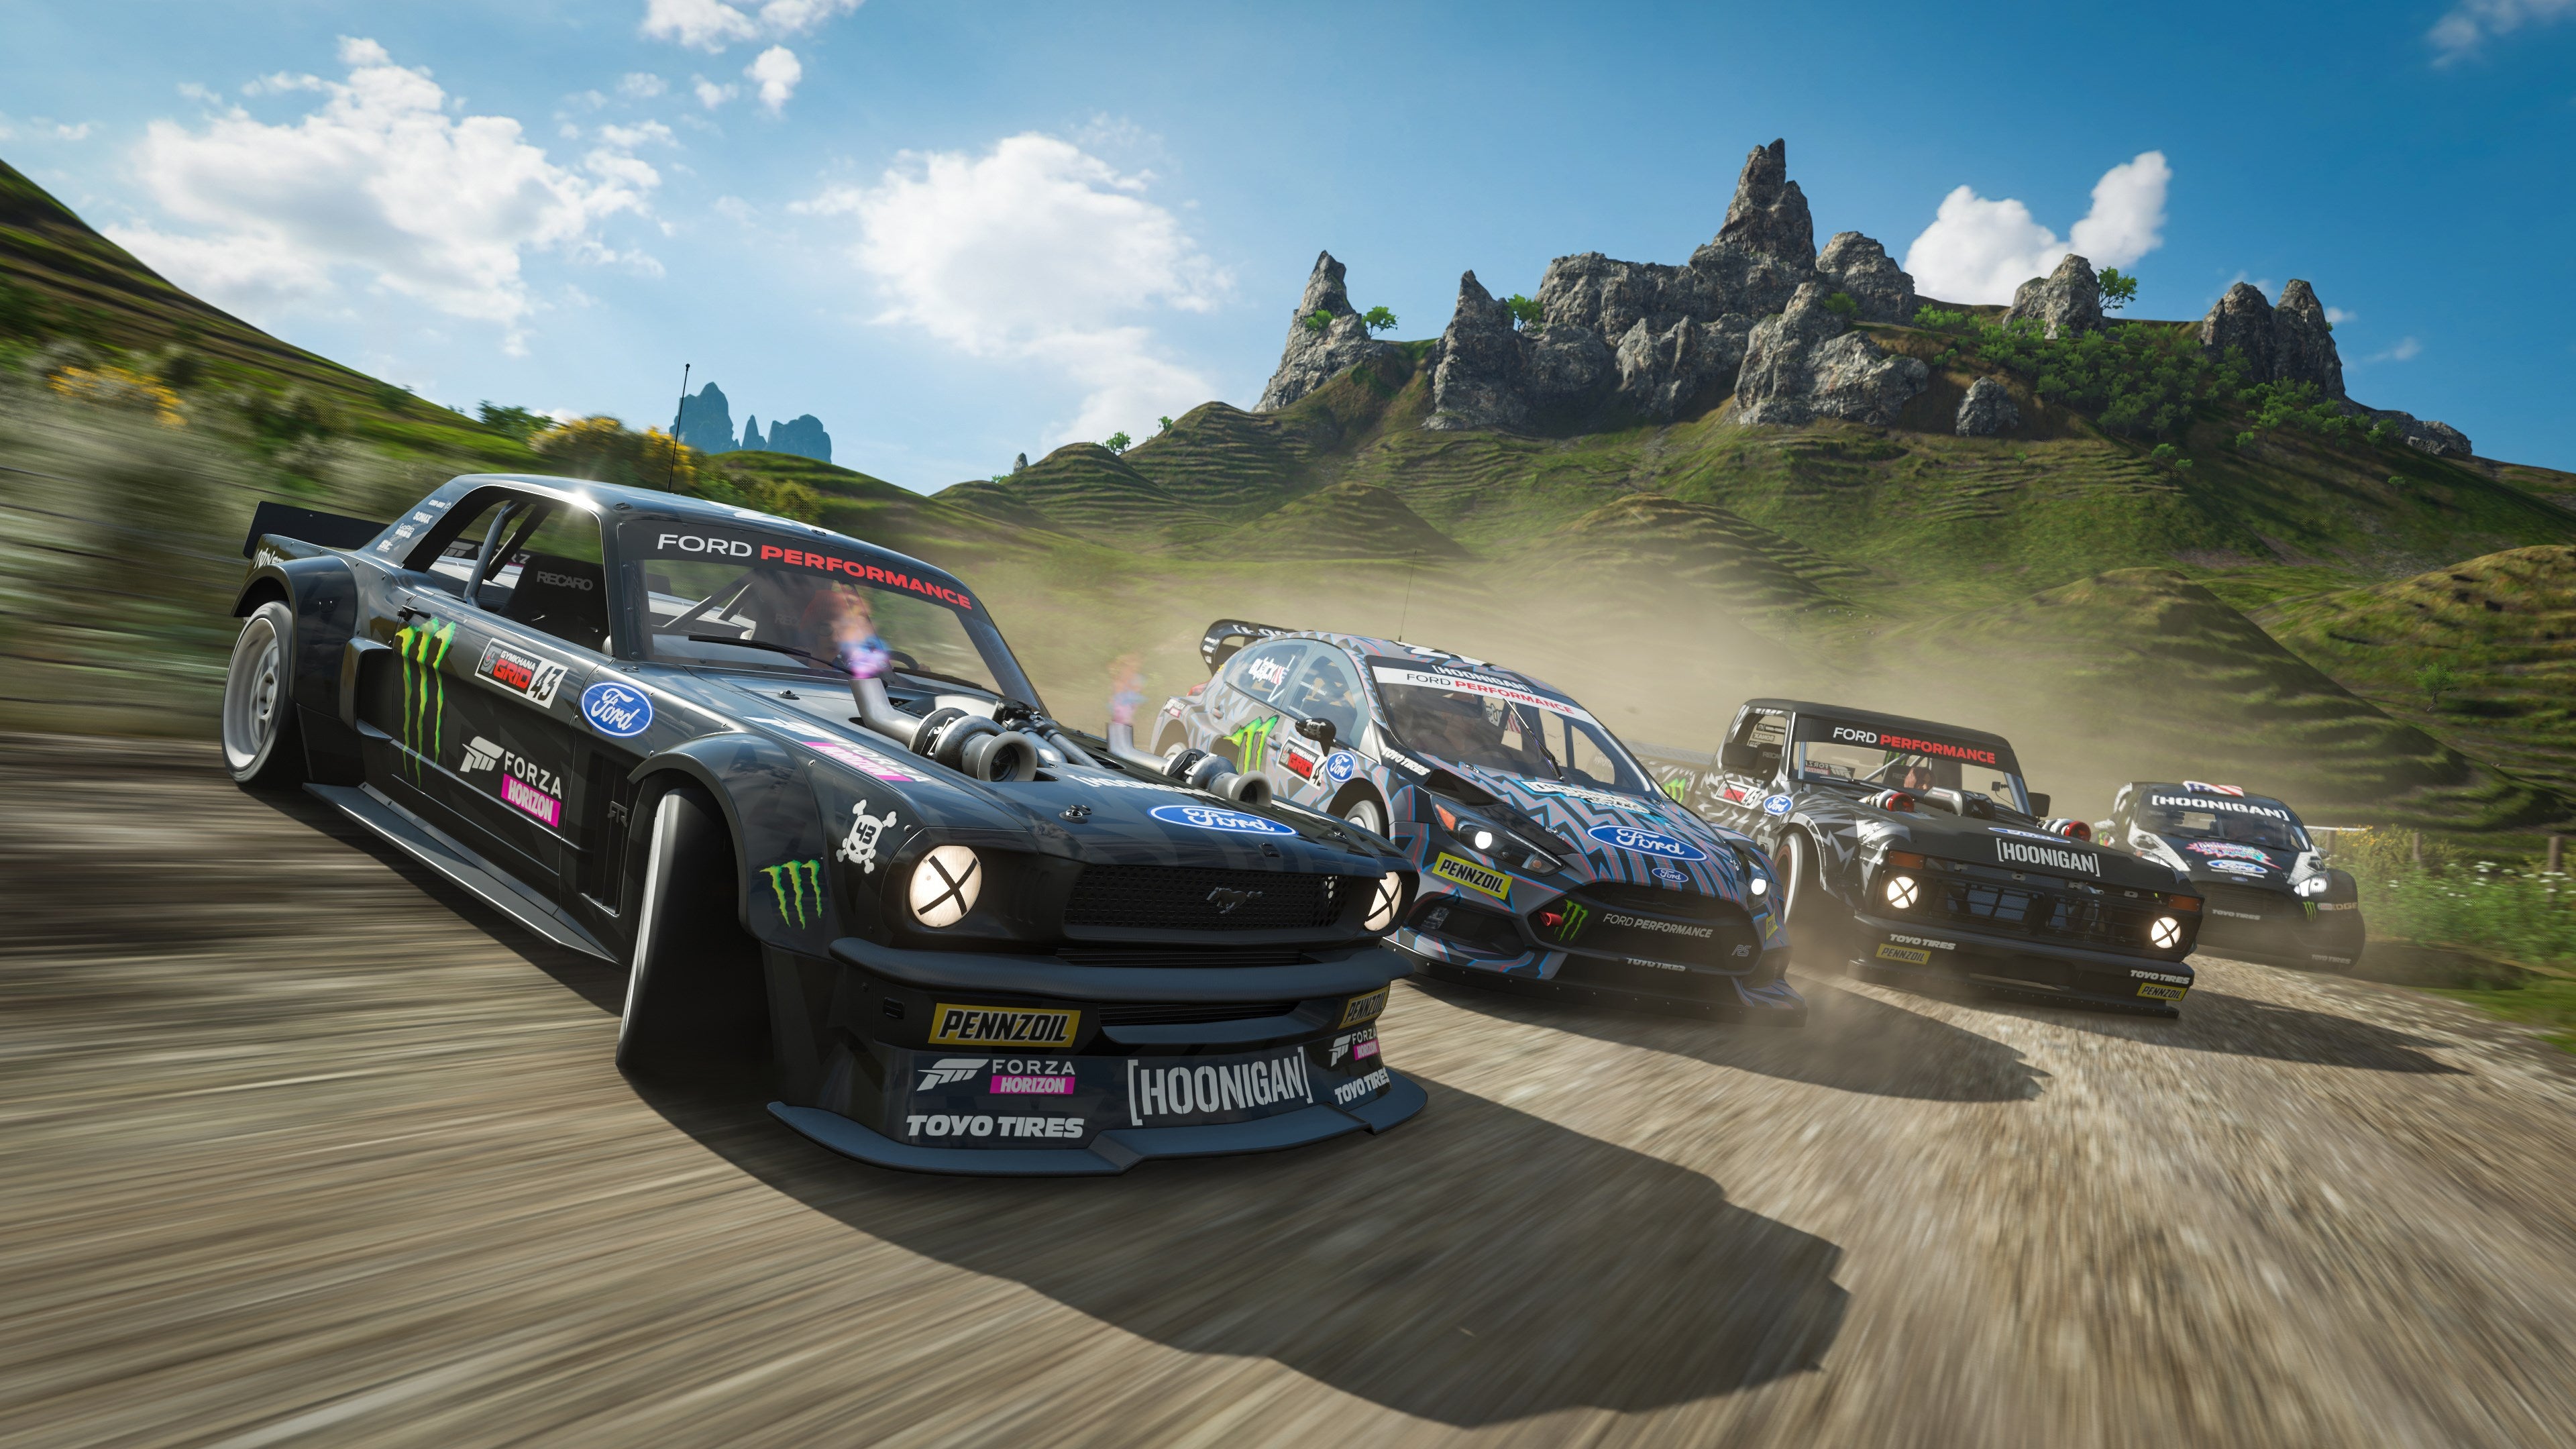 Cars drifting in a Forza Horizon 4 screenshot.